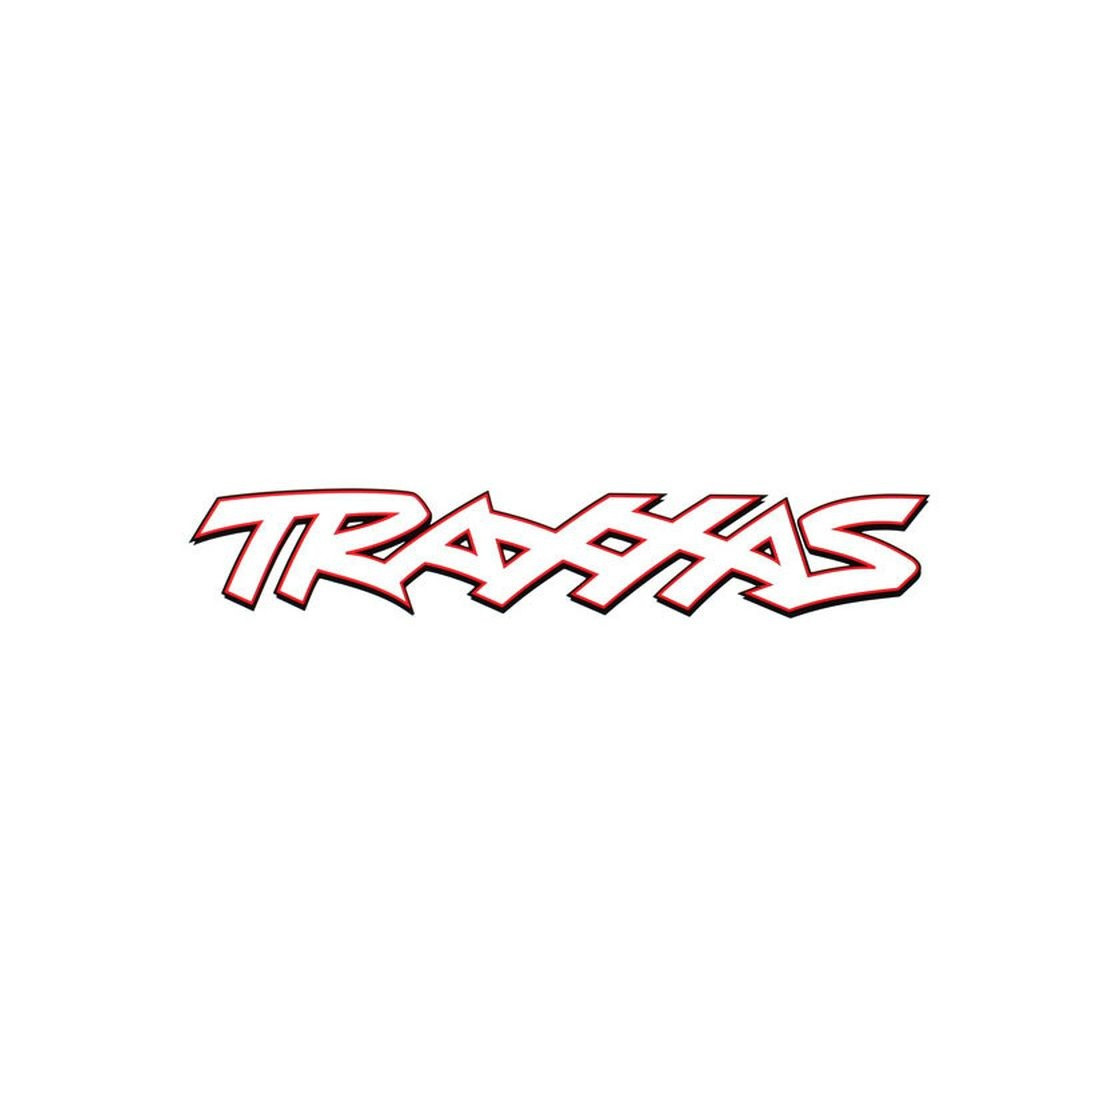 TRAXXAS 8 WHITE VINYL STICKER